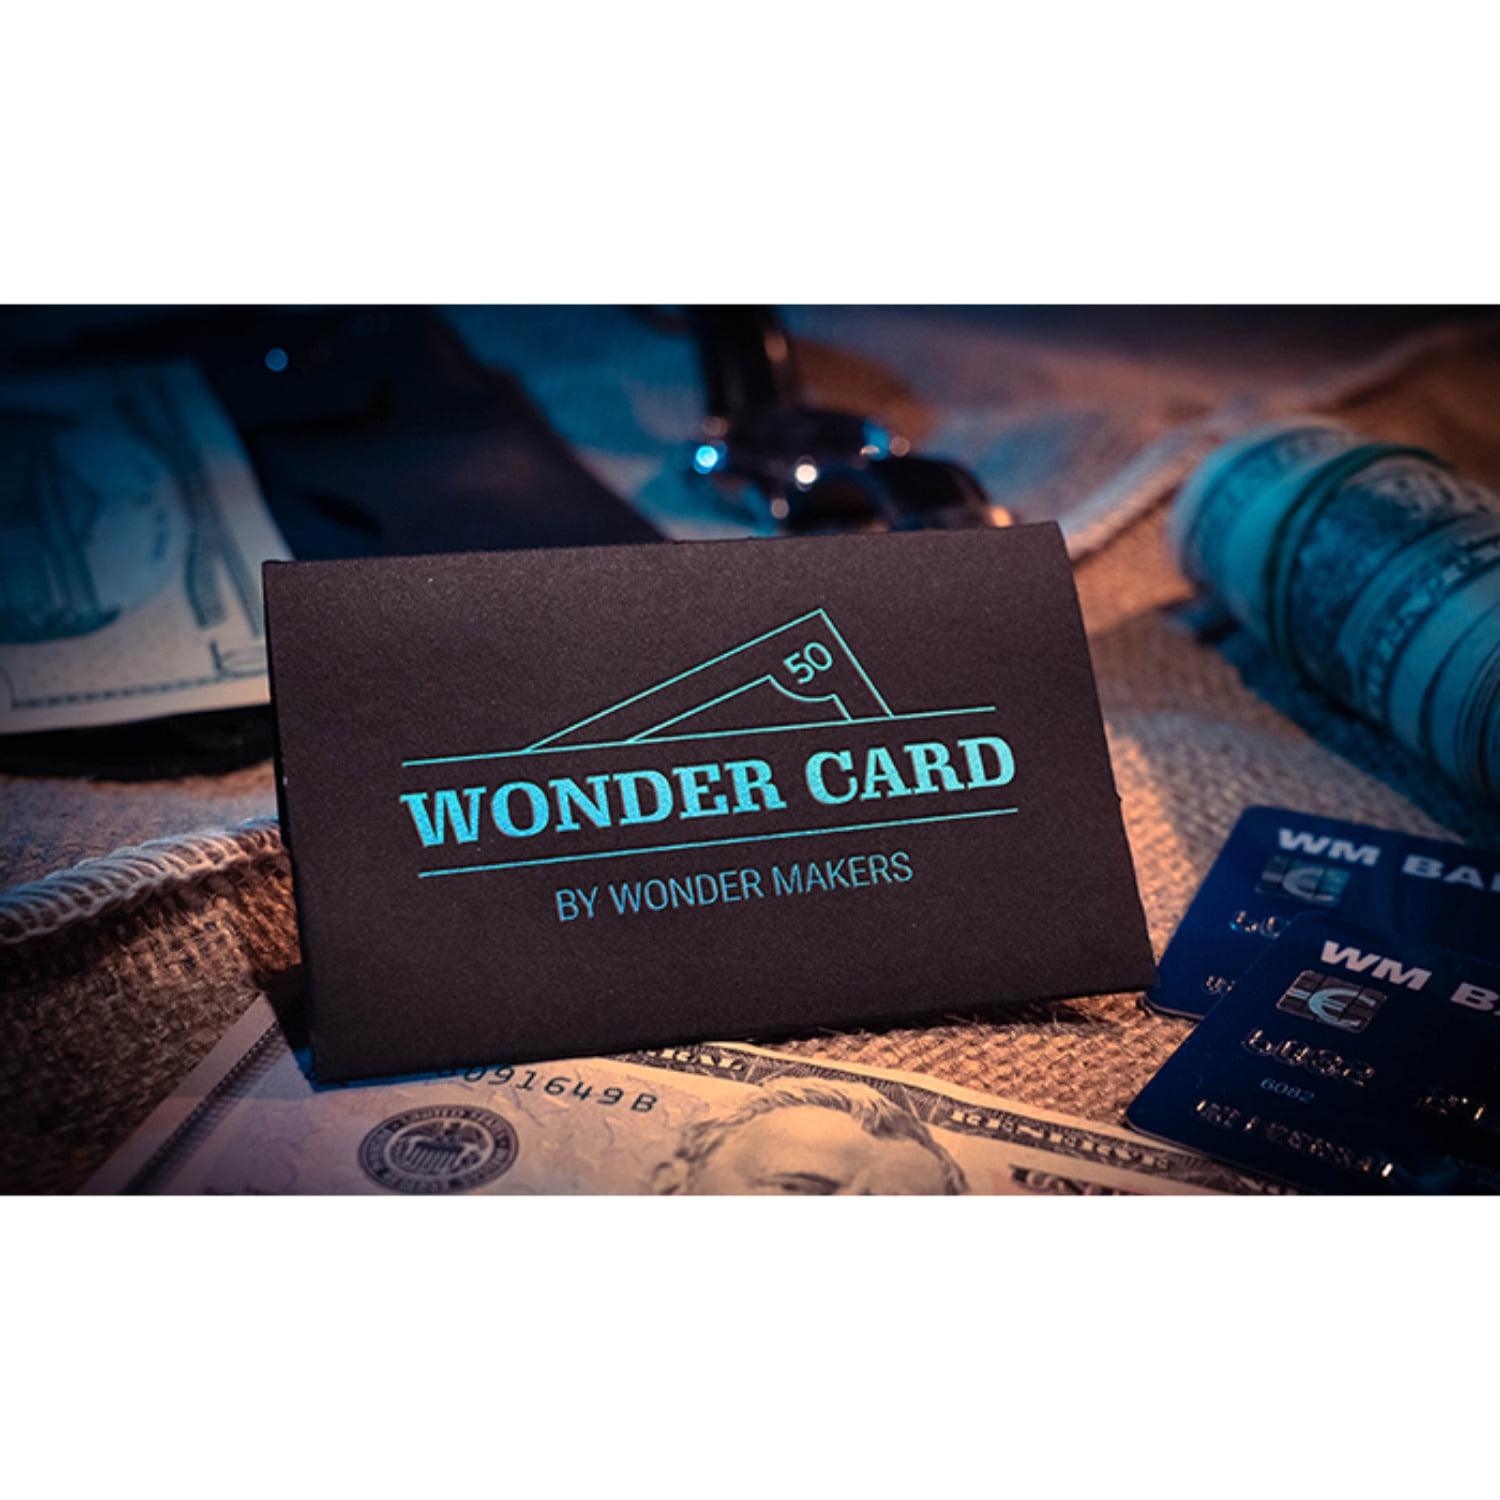 [원더카드]Wonder Card by Wonder Makers 신용카드를 이용한 비쥬얼한 7가지 마술을 연출하실 수 있습니다.